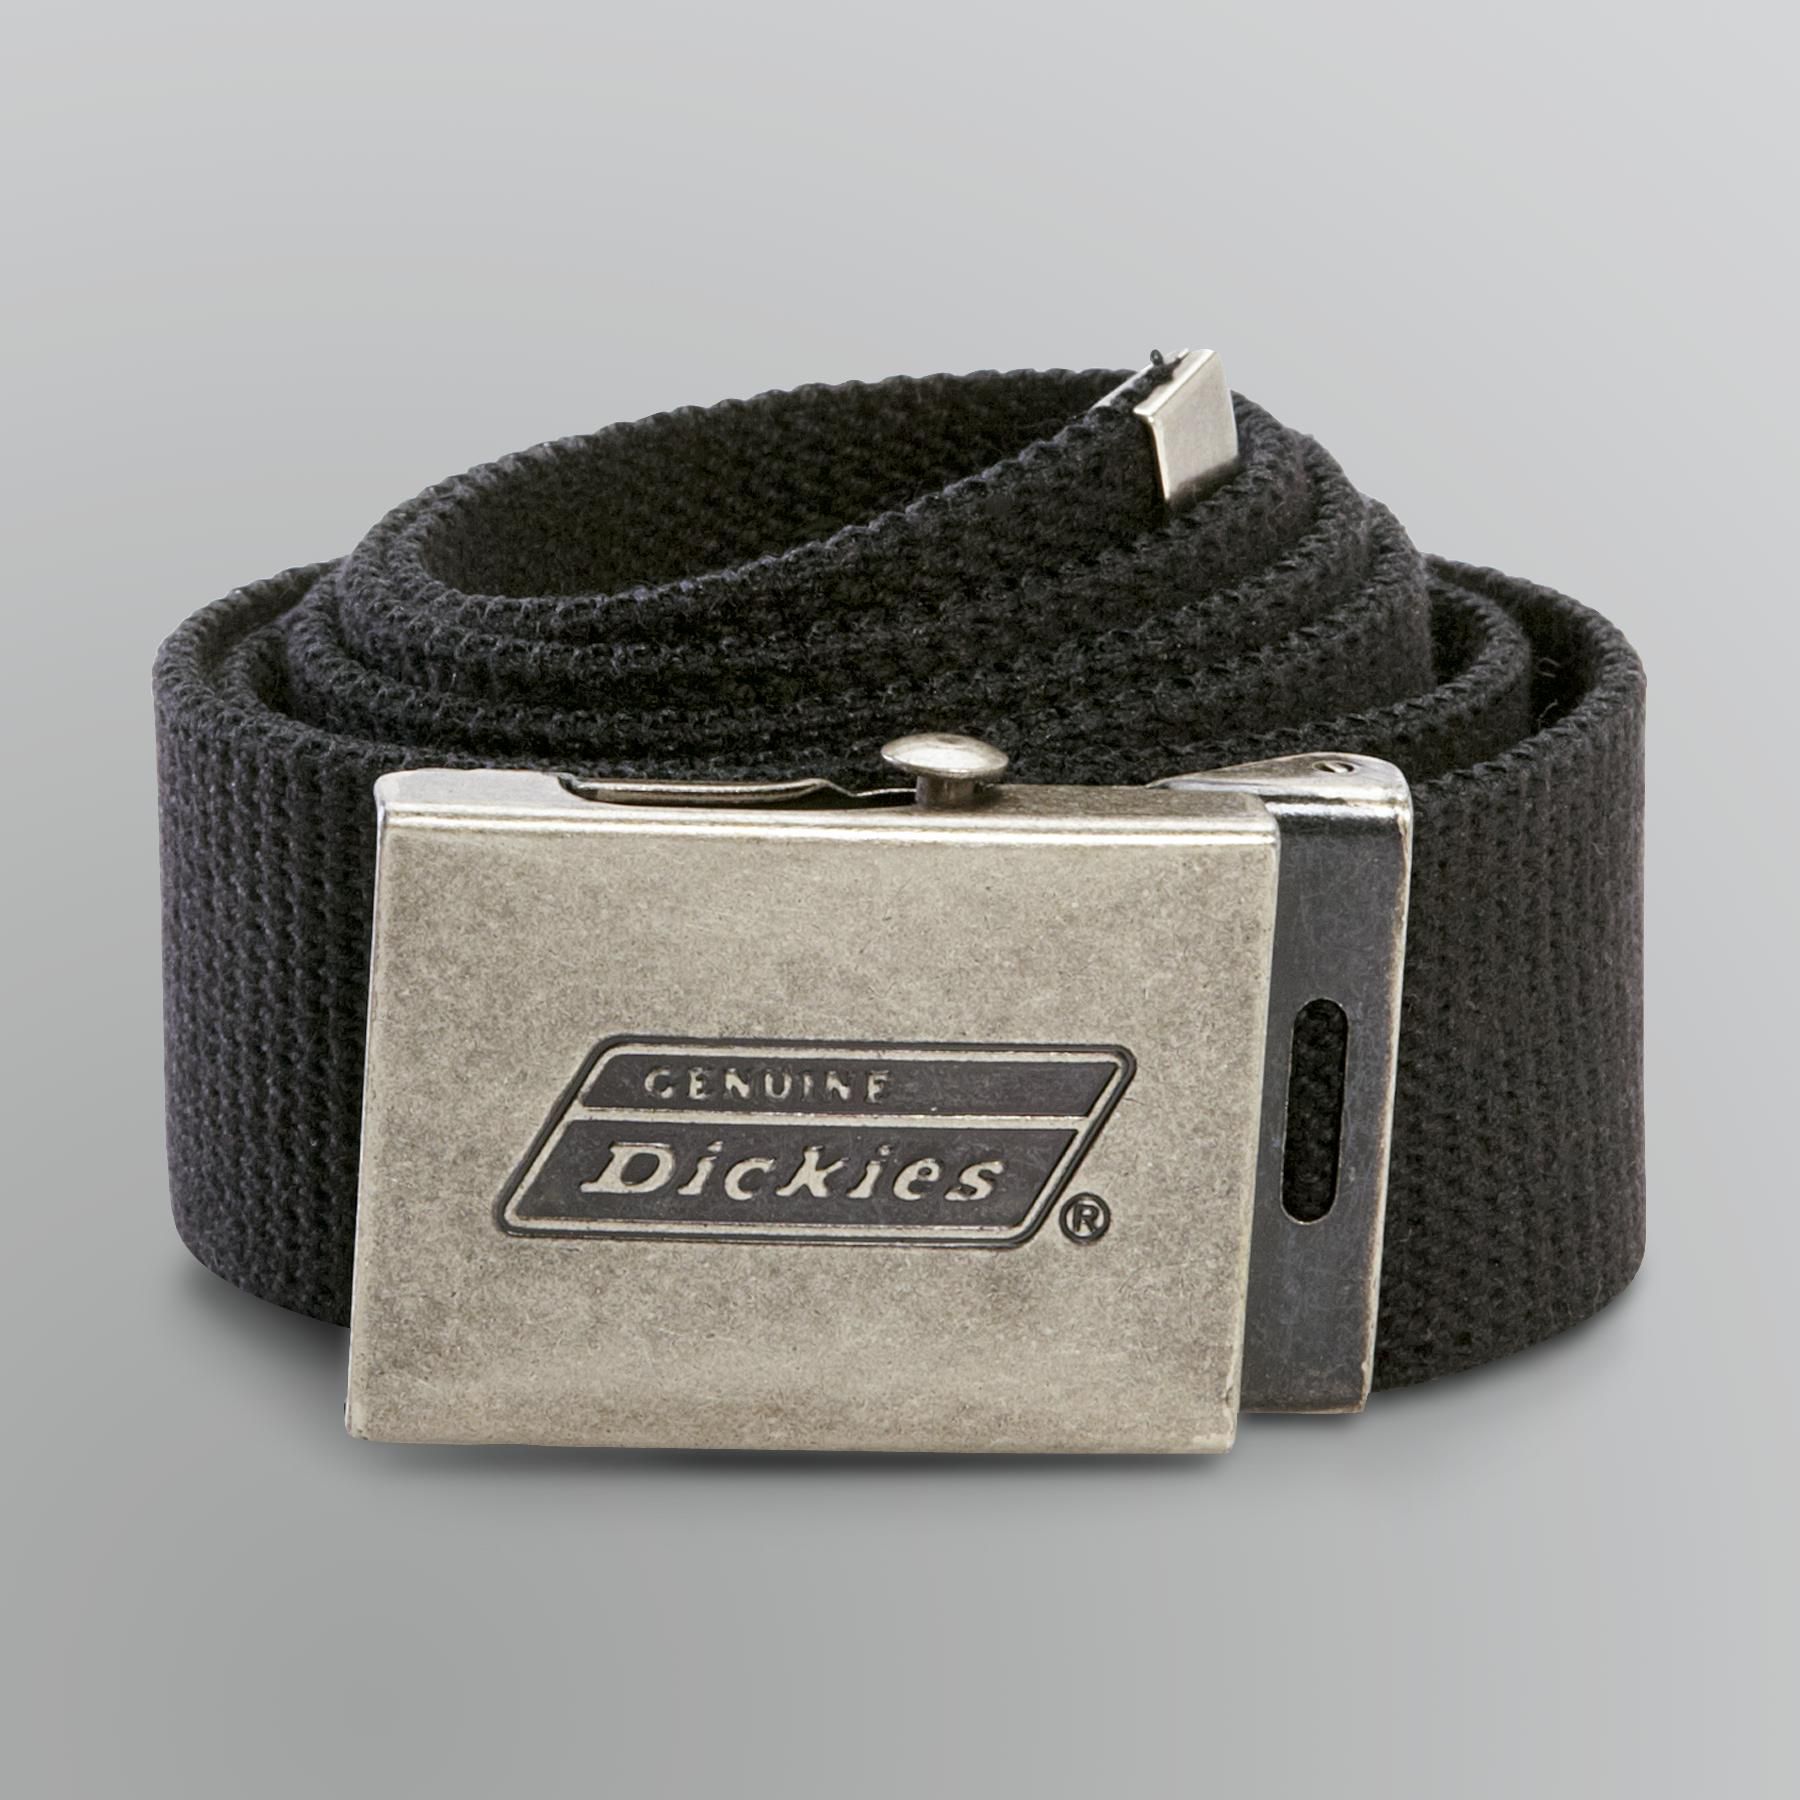 Genuine Dickies Men's Cloth Belt